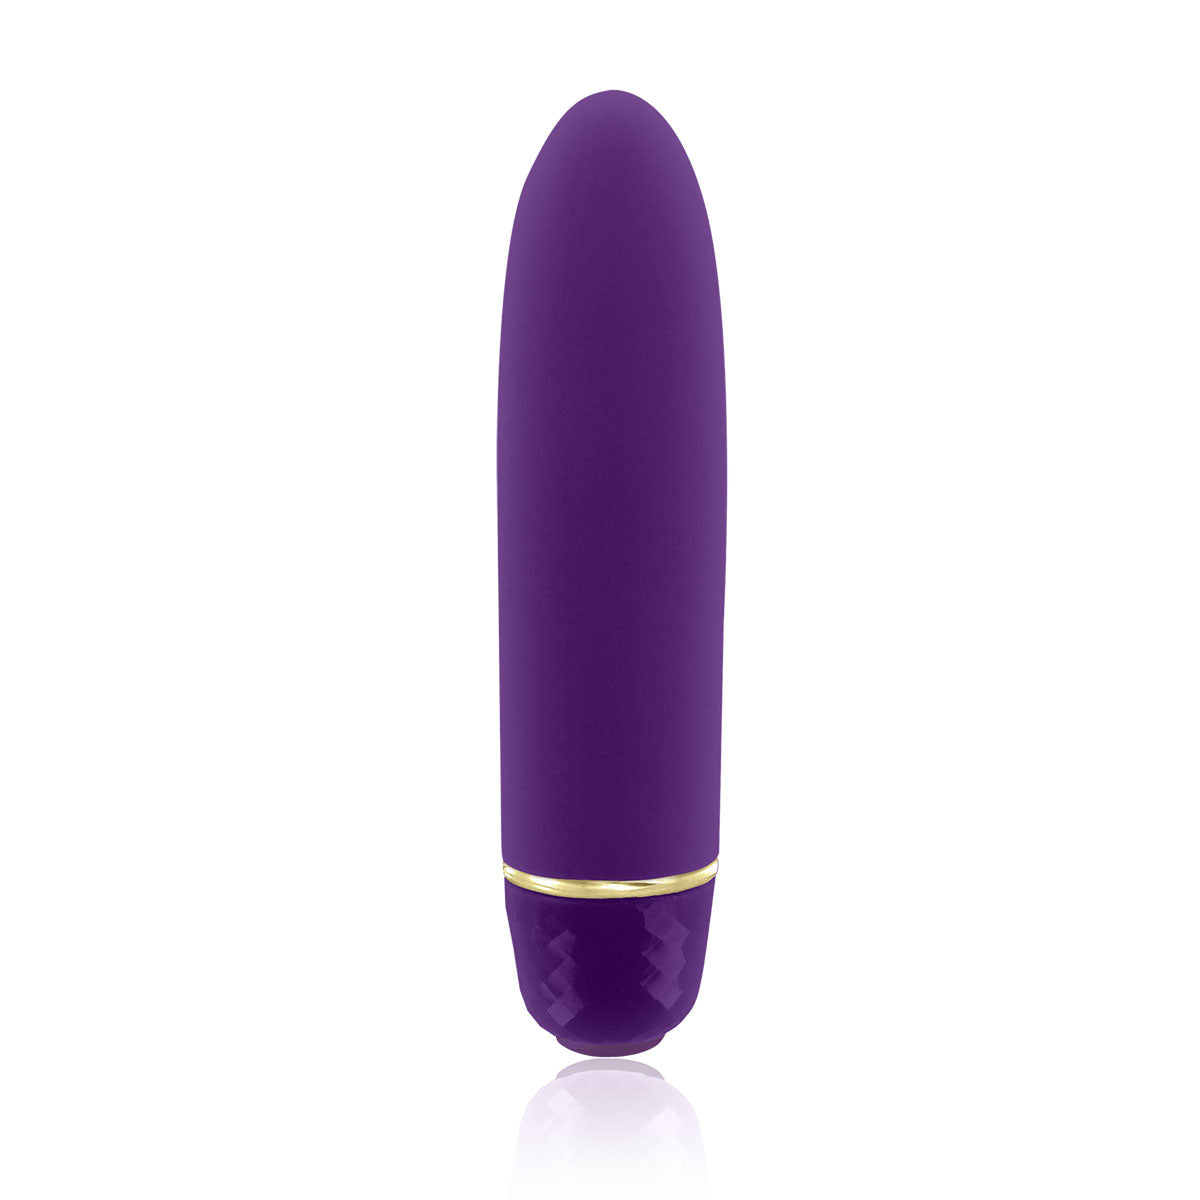 Rianne S. Classique - Purple Classic Vibrator